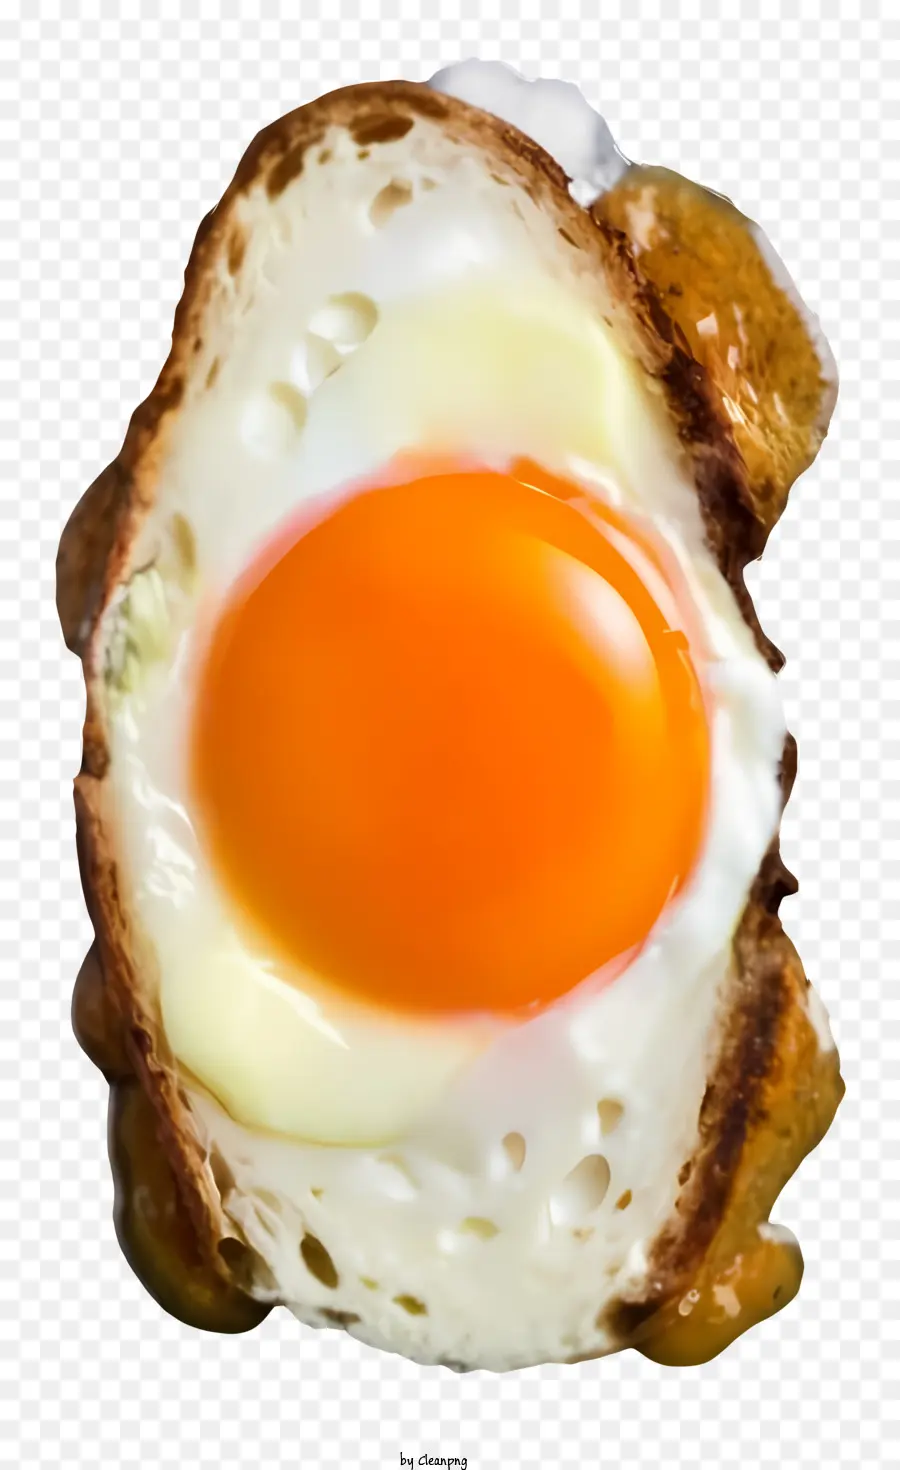 Pane tostato di uovo tostato texture croccante stringi di tuorlo uovo bianco croccante - Uovo con tuorlo rotto e pane croccante